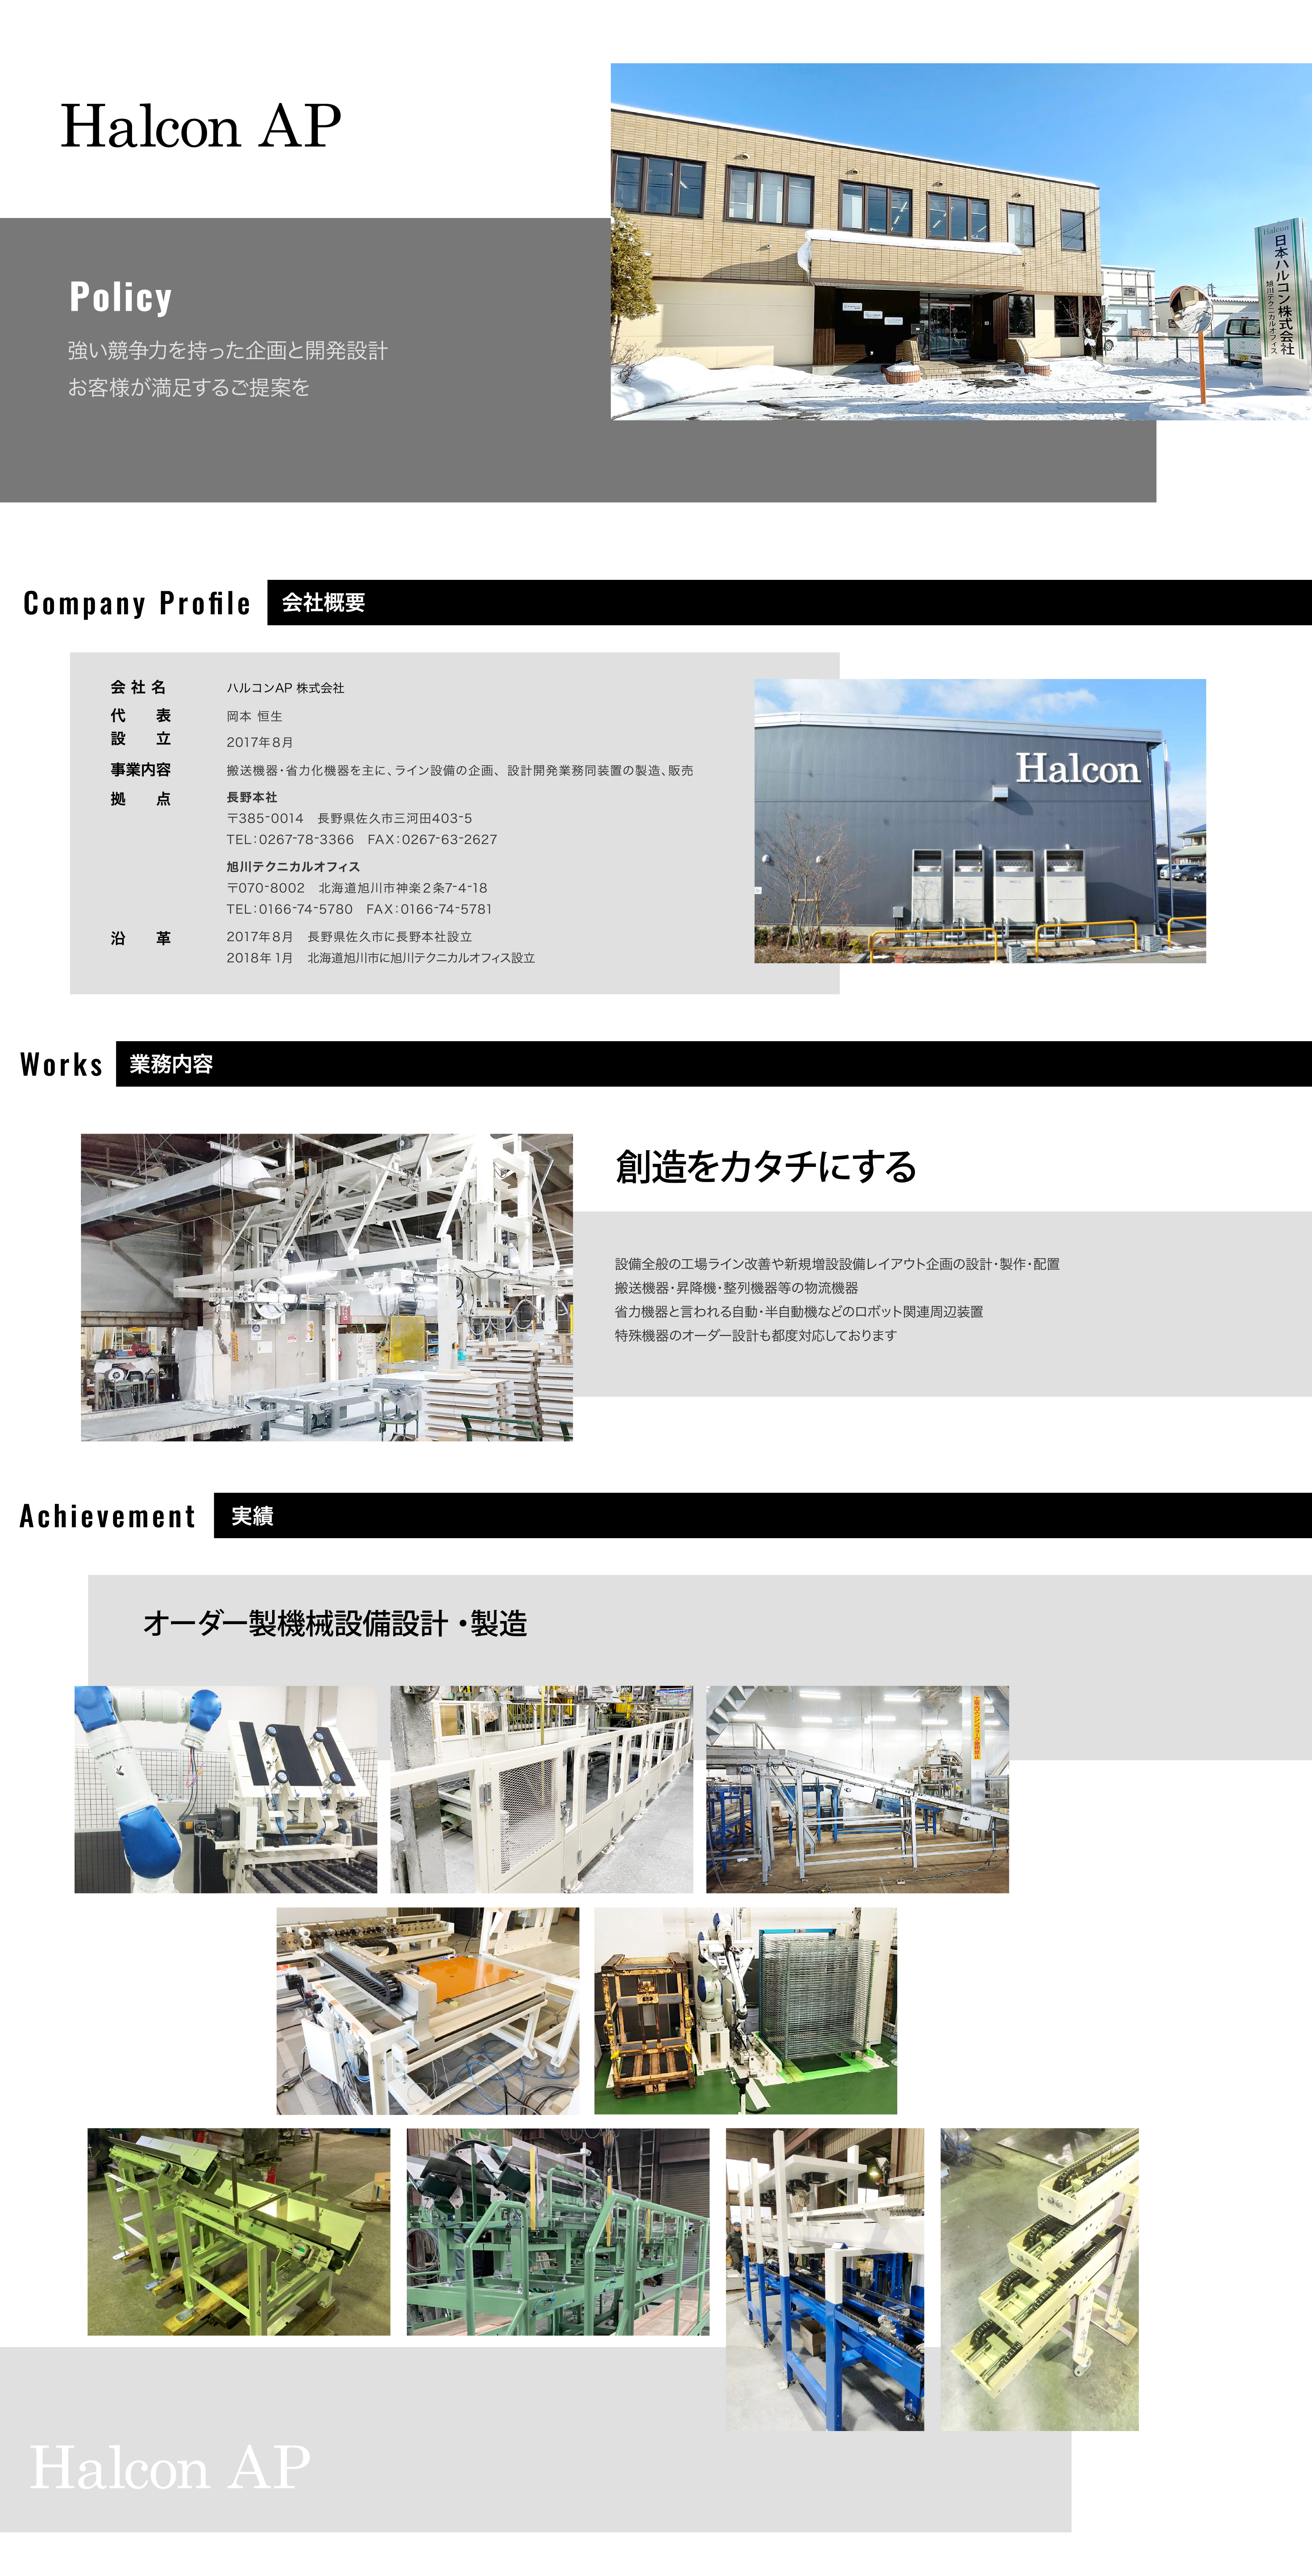 ハルコンAP株式会社｜日本ハルコン関連会社｜搬送機器・省力化機器を主に、ライン設備の企画、設計開発業務同装置の製造、販売